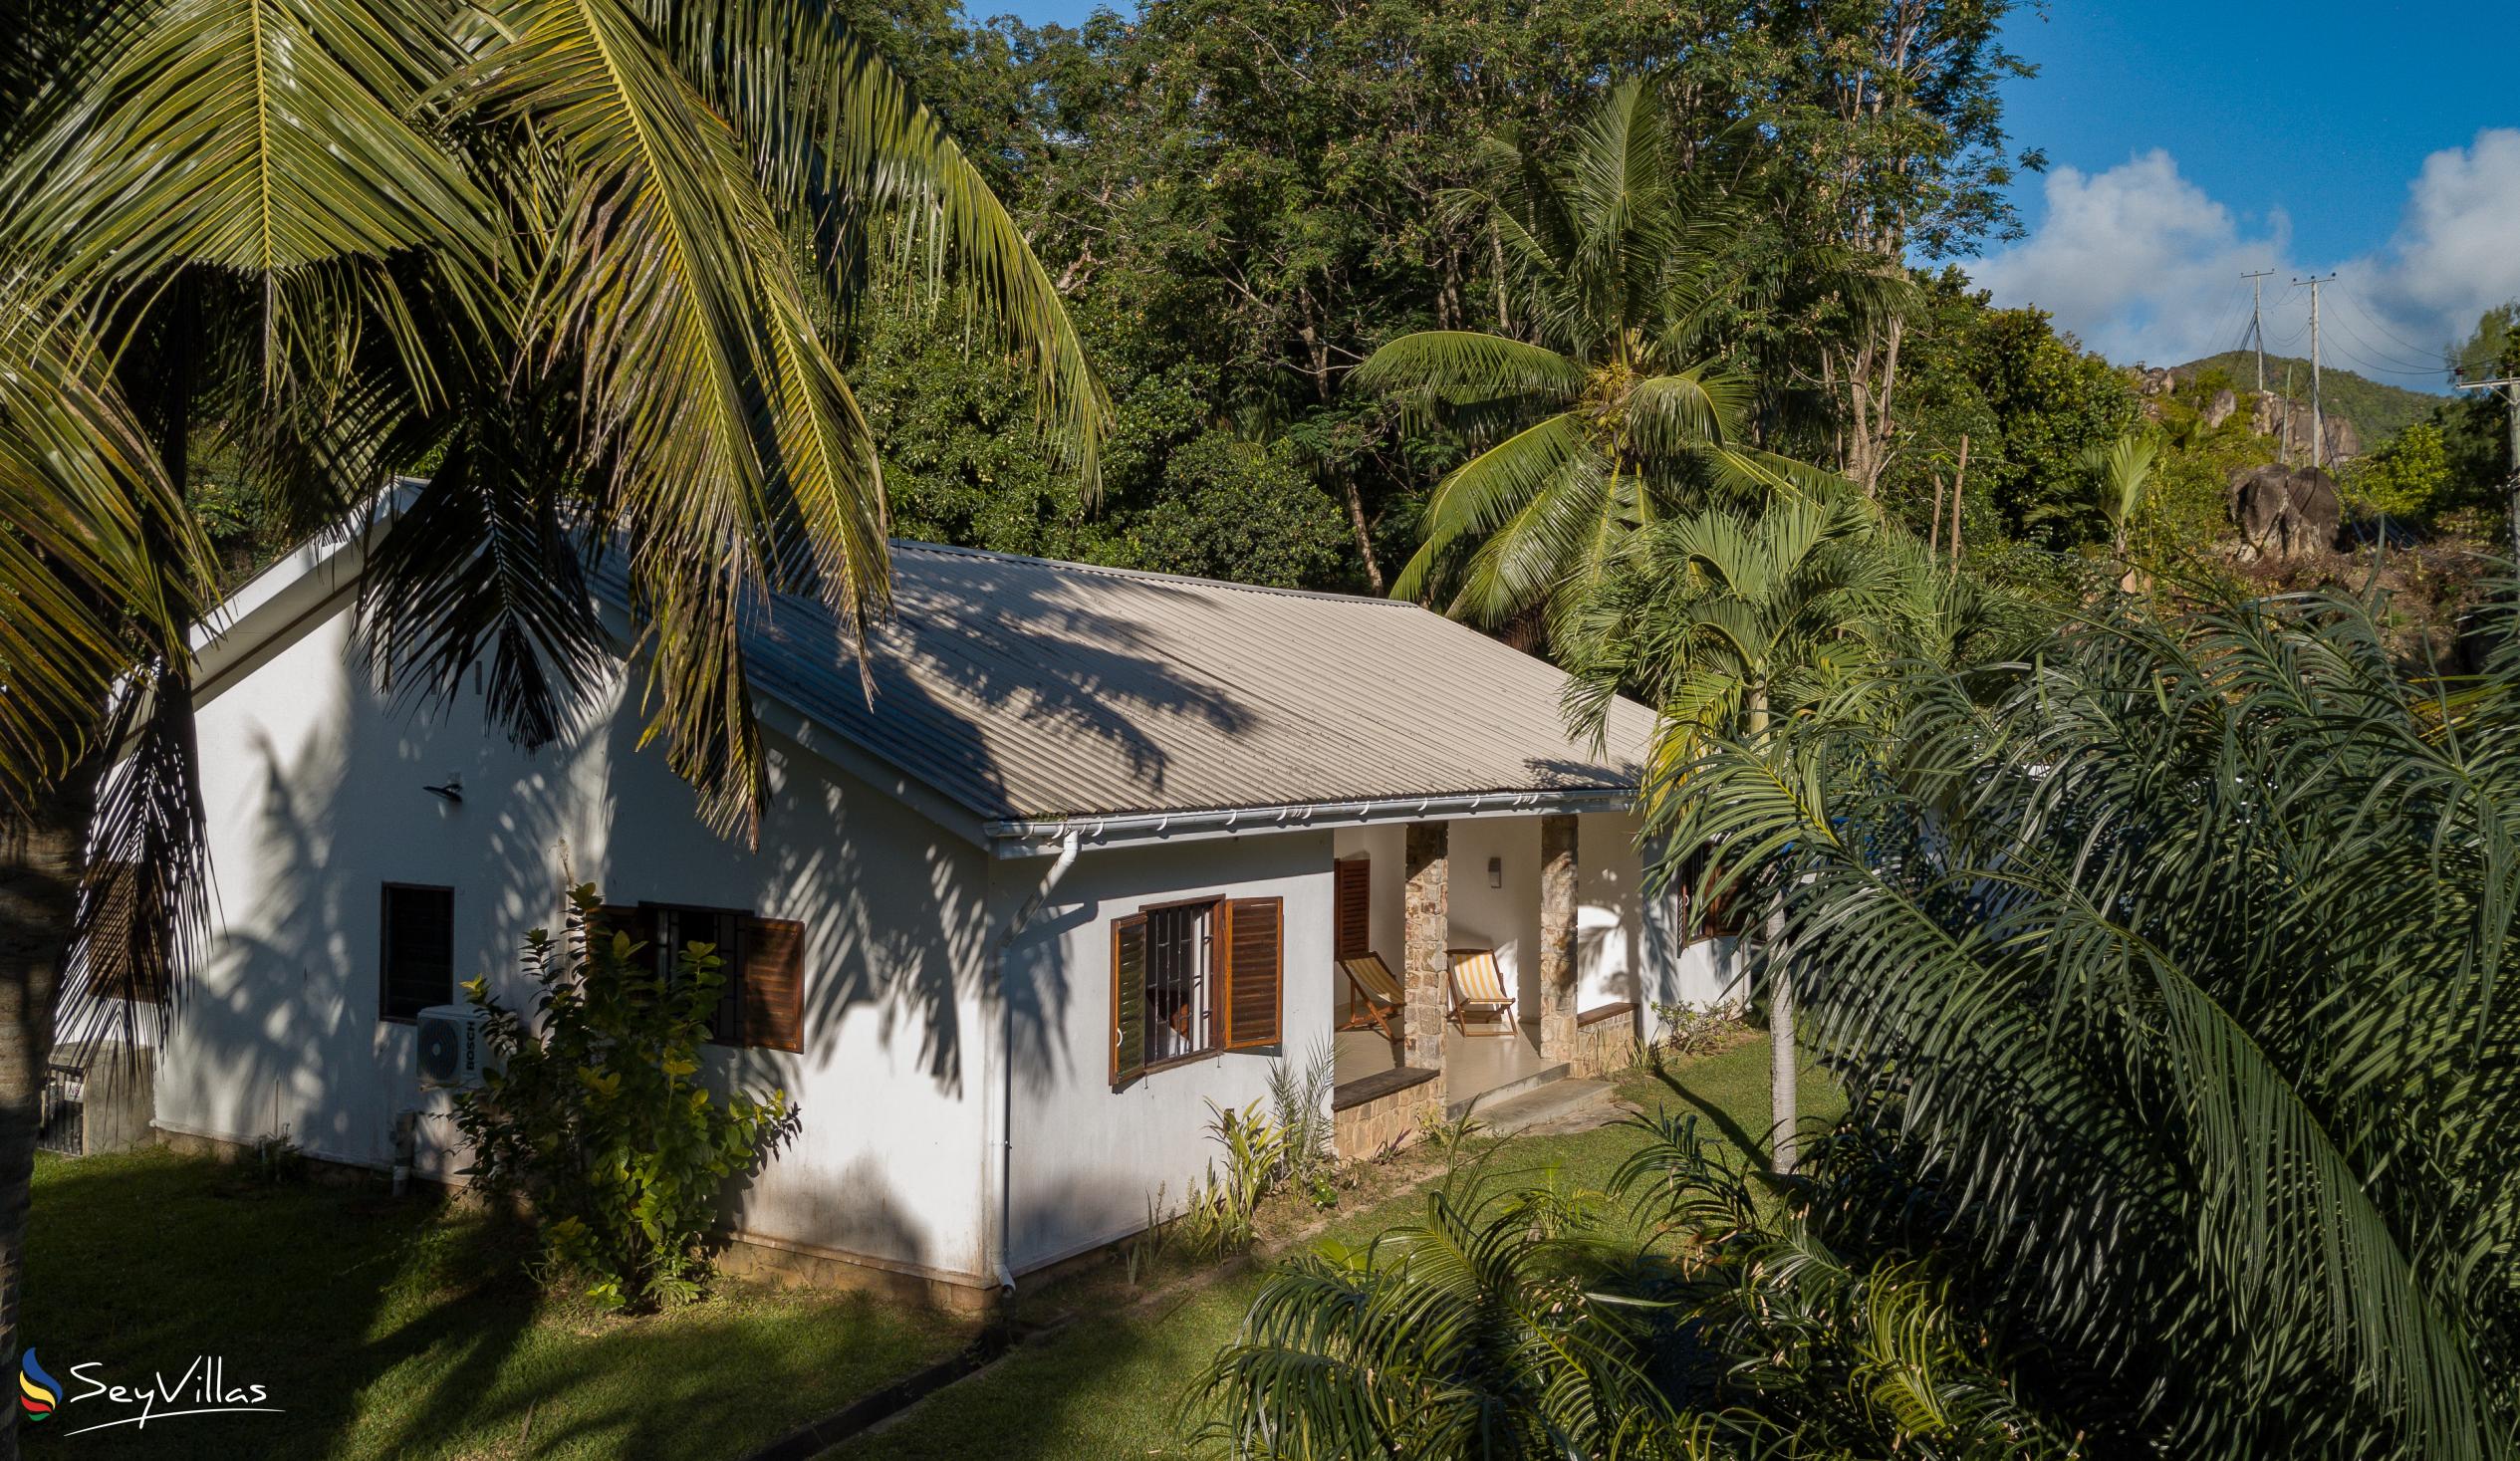 Foto 1: Villa Zananas - Aussenbereich - Praslin (Seychellen)